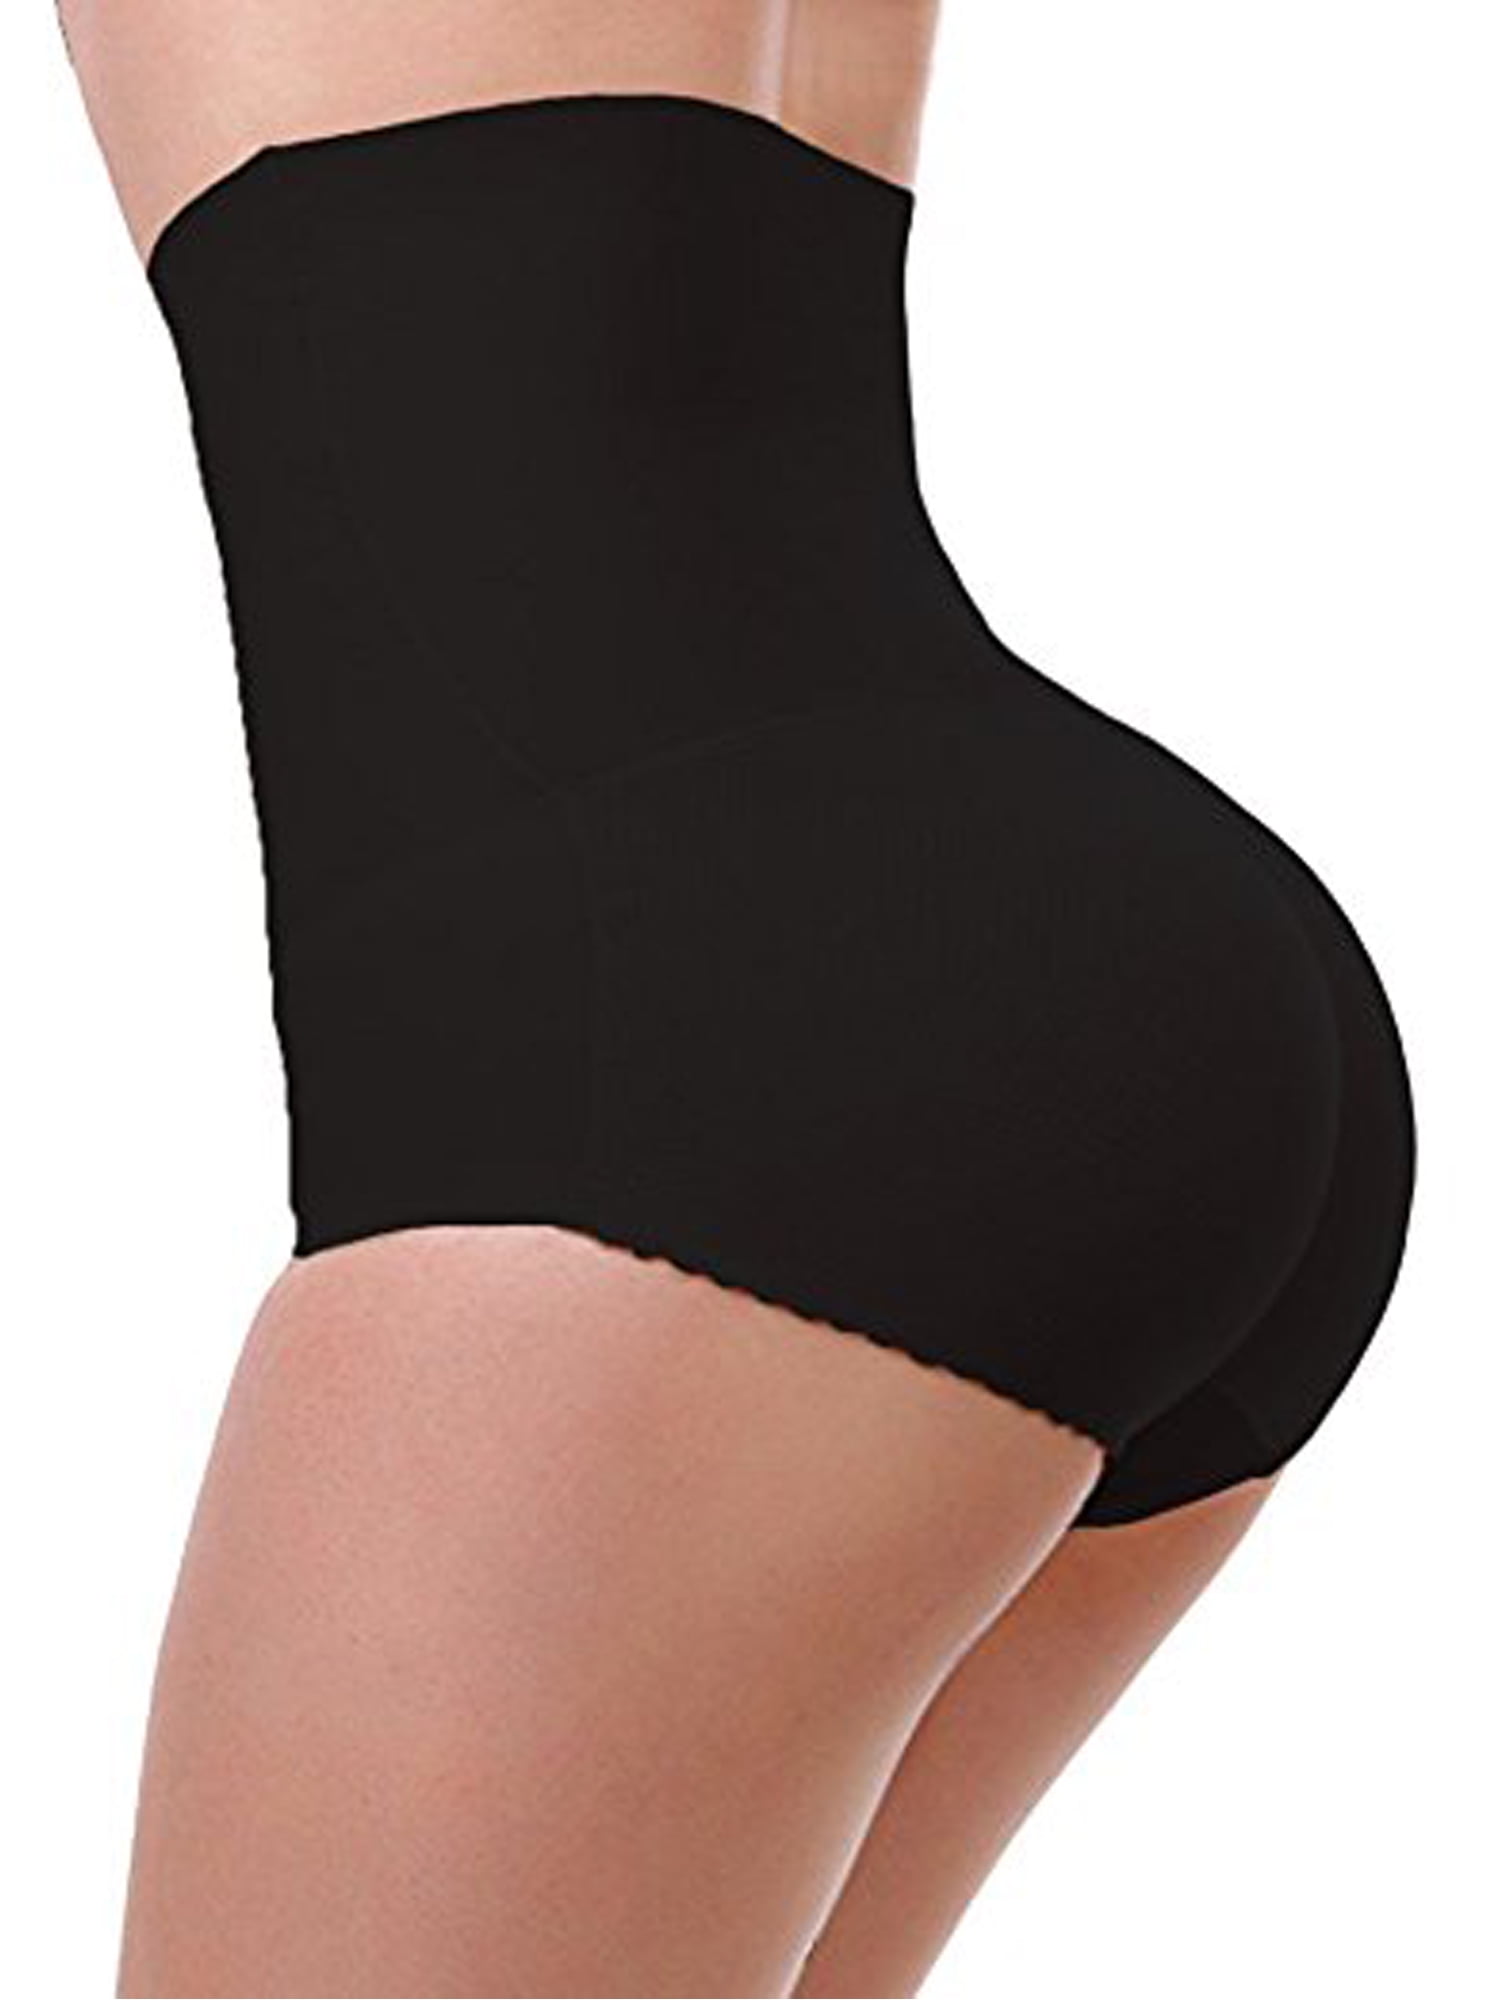 New High Waist Padded Panties Butt Lifter Booster Body Shaper Enhancer Tummy